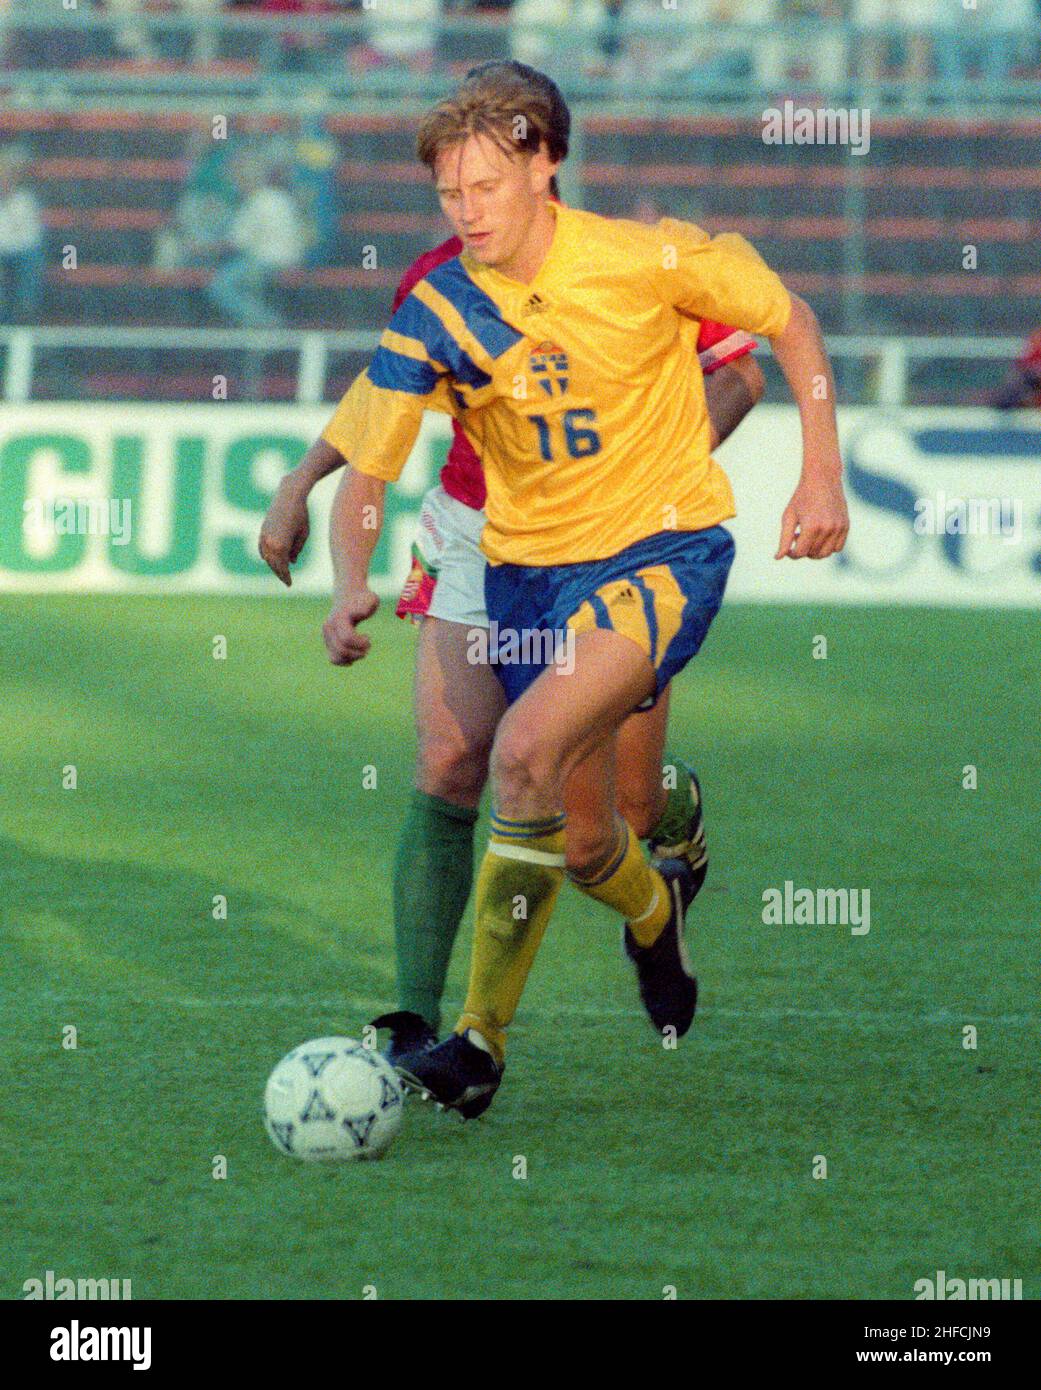 KENNET ANDERSSON joueur de football en équipe nationale suédoise et professionnel en Belgique Mechelem lors du Championnat d'Europe en Suède 1992 Banque D'Images